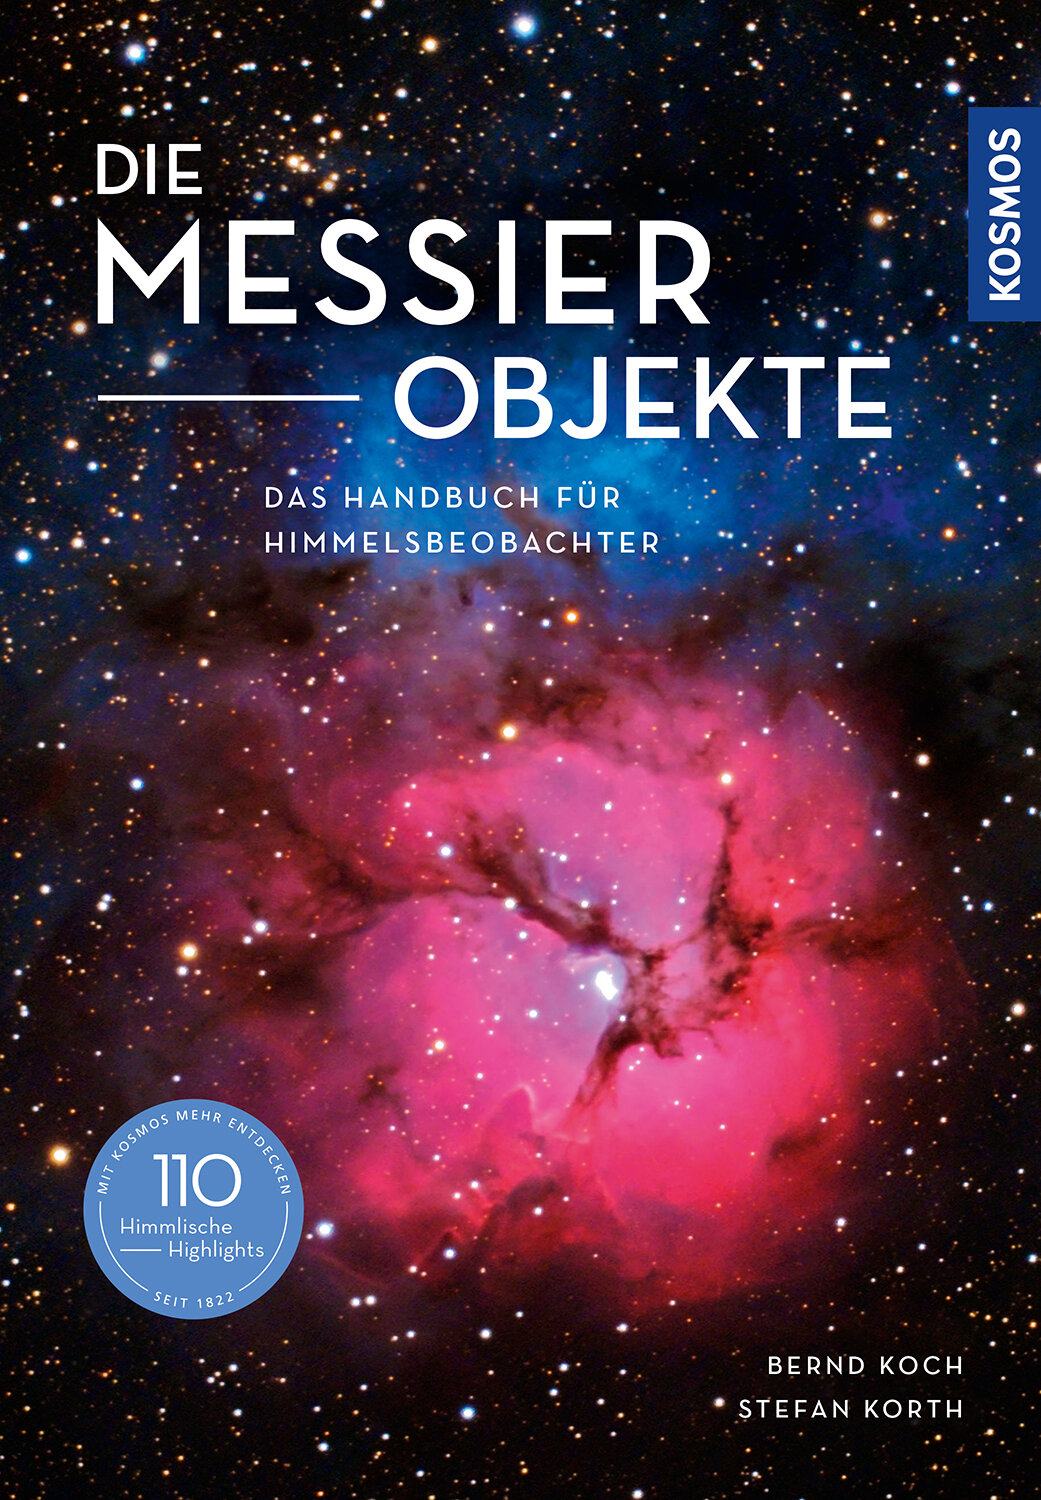 Die Messier-Objekte